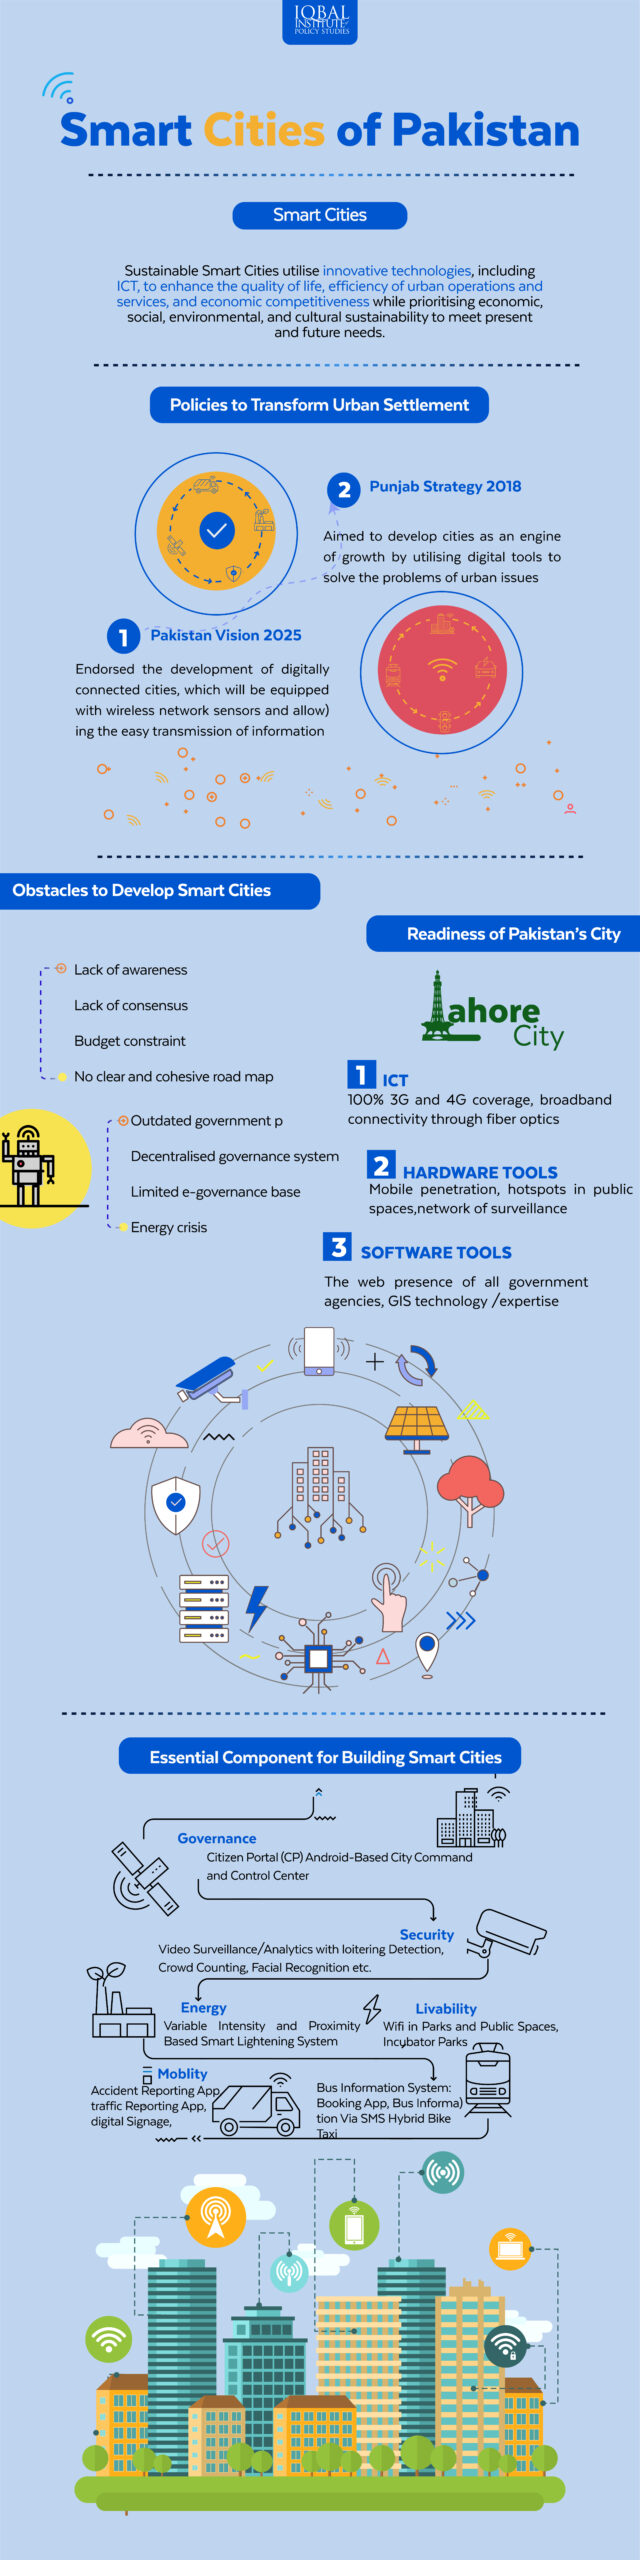 Smart Cities of Pakistan